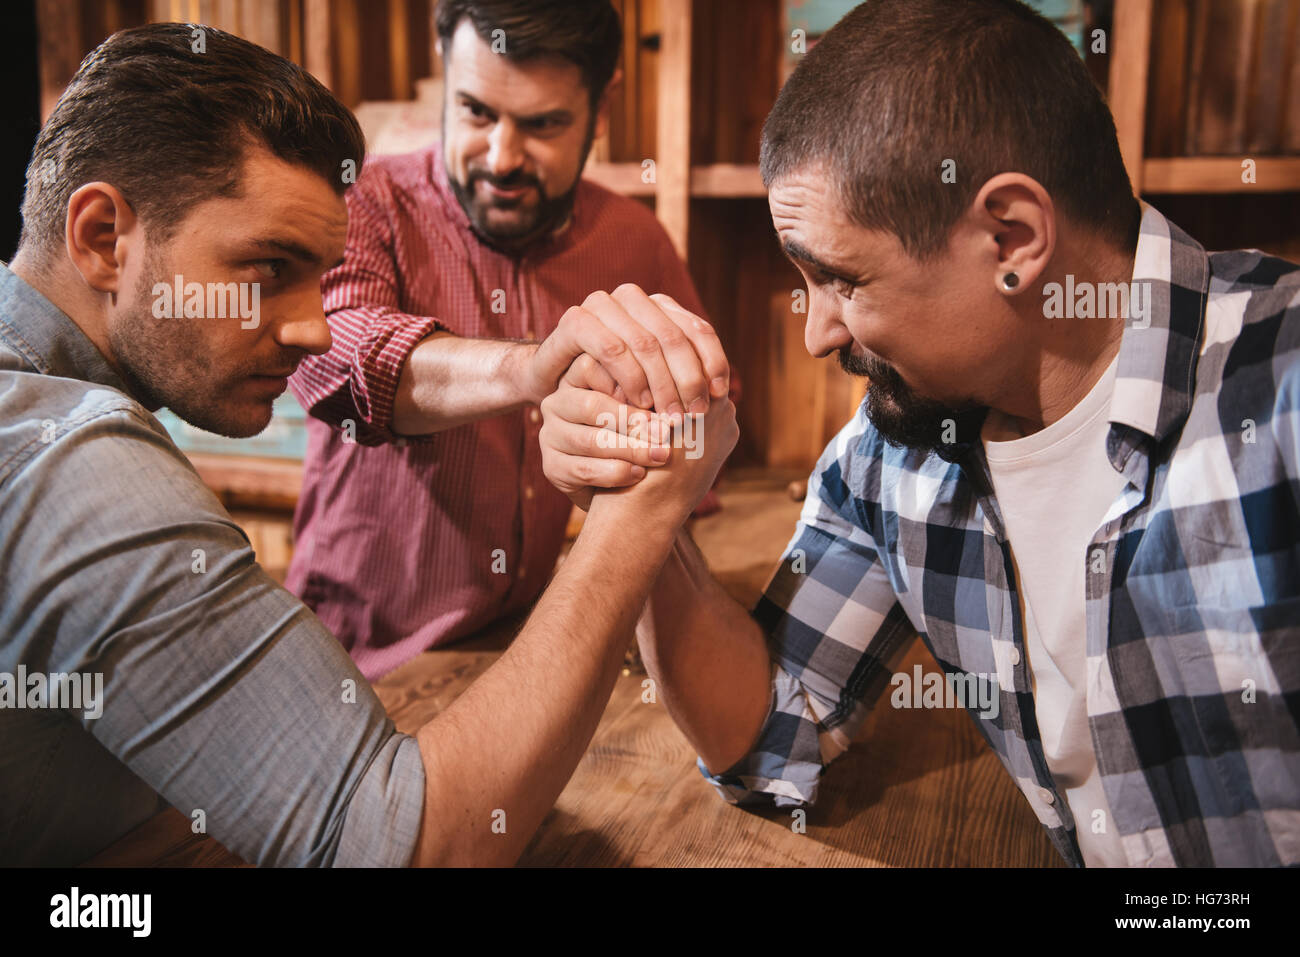 Belli gli uomini seria preparazione per avviare un confronto armwrestling Foto Stock